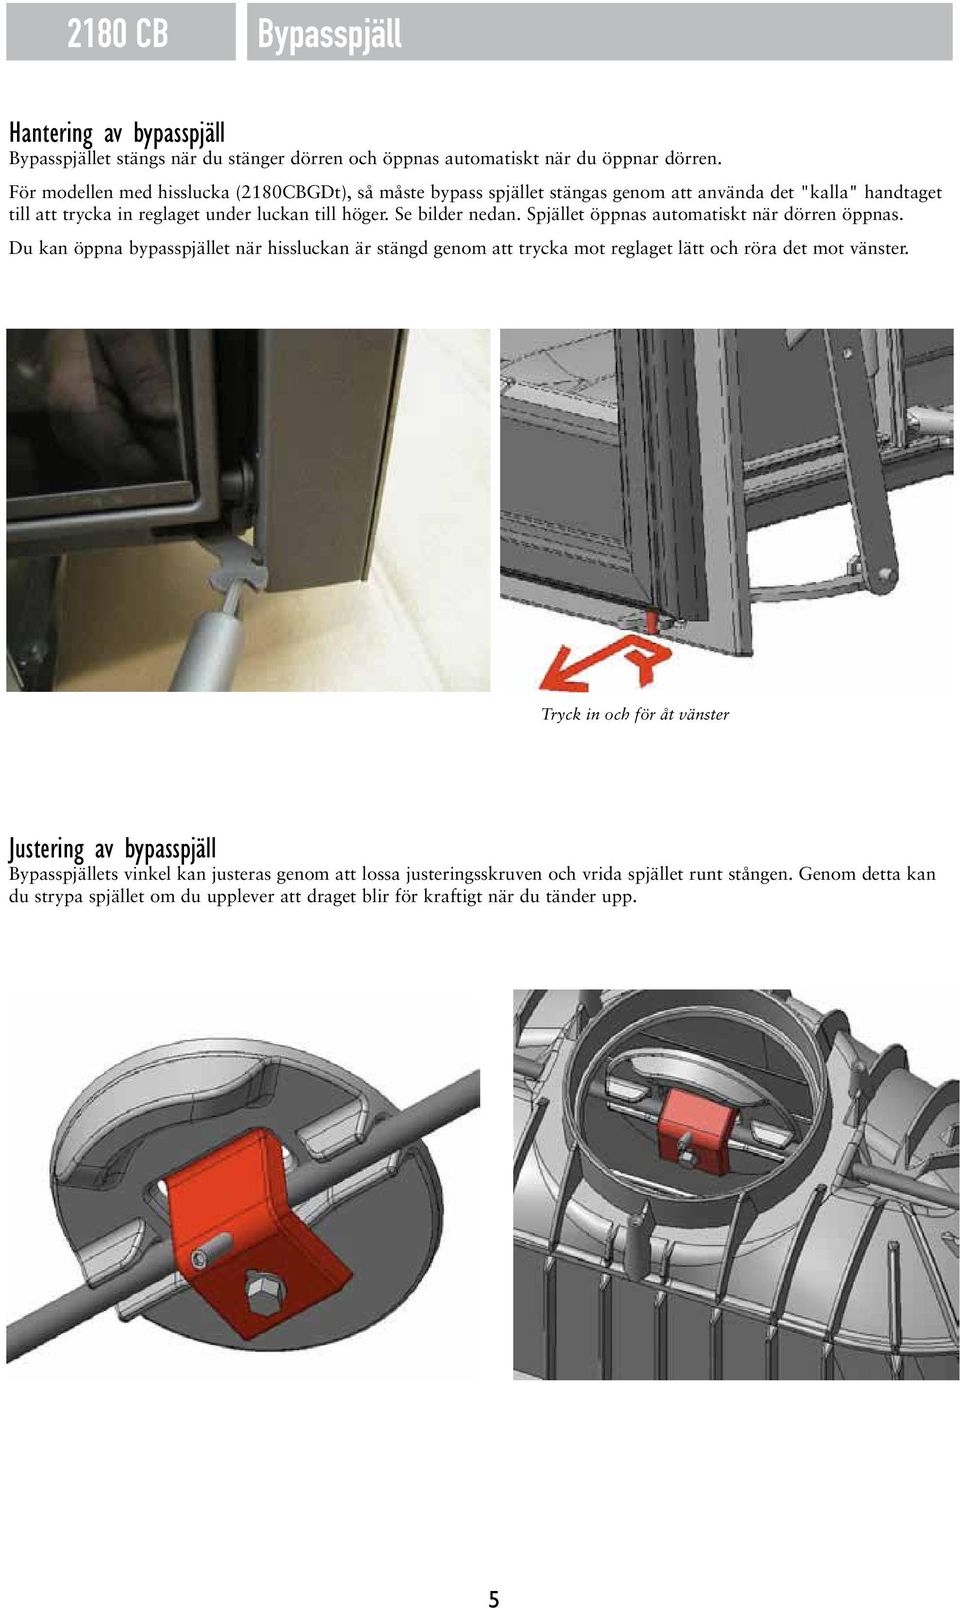 Spjället öppnas automatiskt när dörren öppnas. Du kan öppna bypasspjället när hissluckan är stängd genom att trycka mot reglaget lätt och röra det mot vänster.